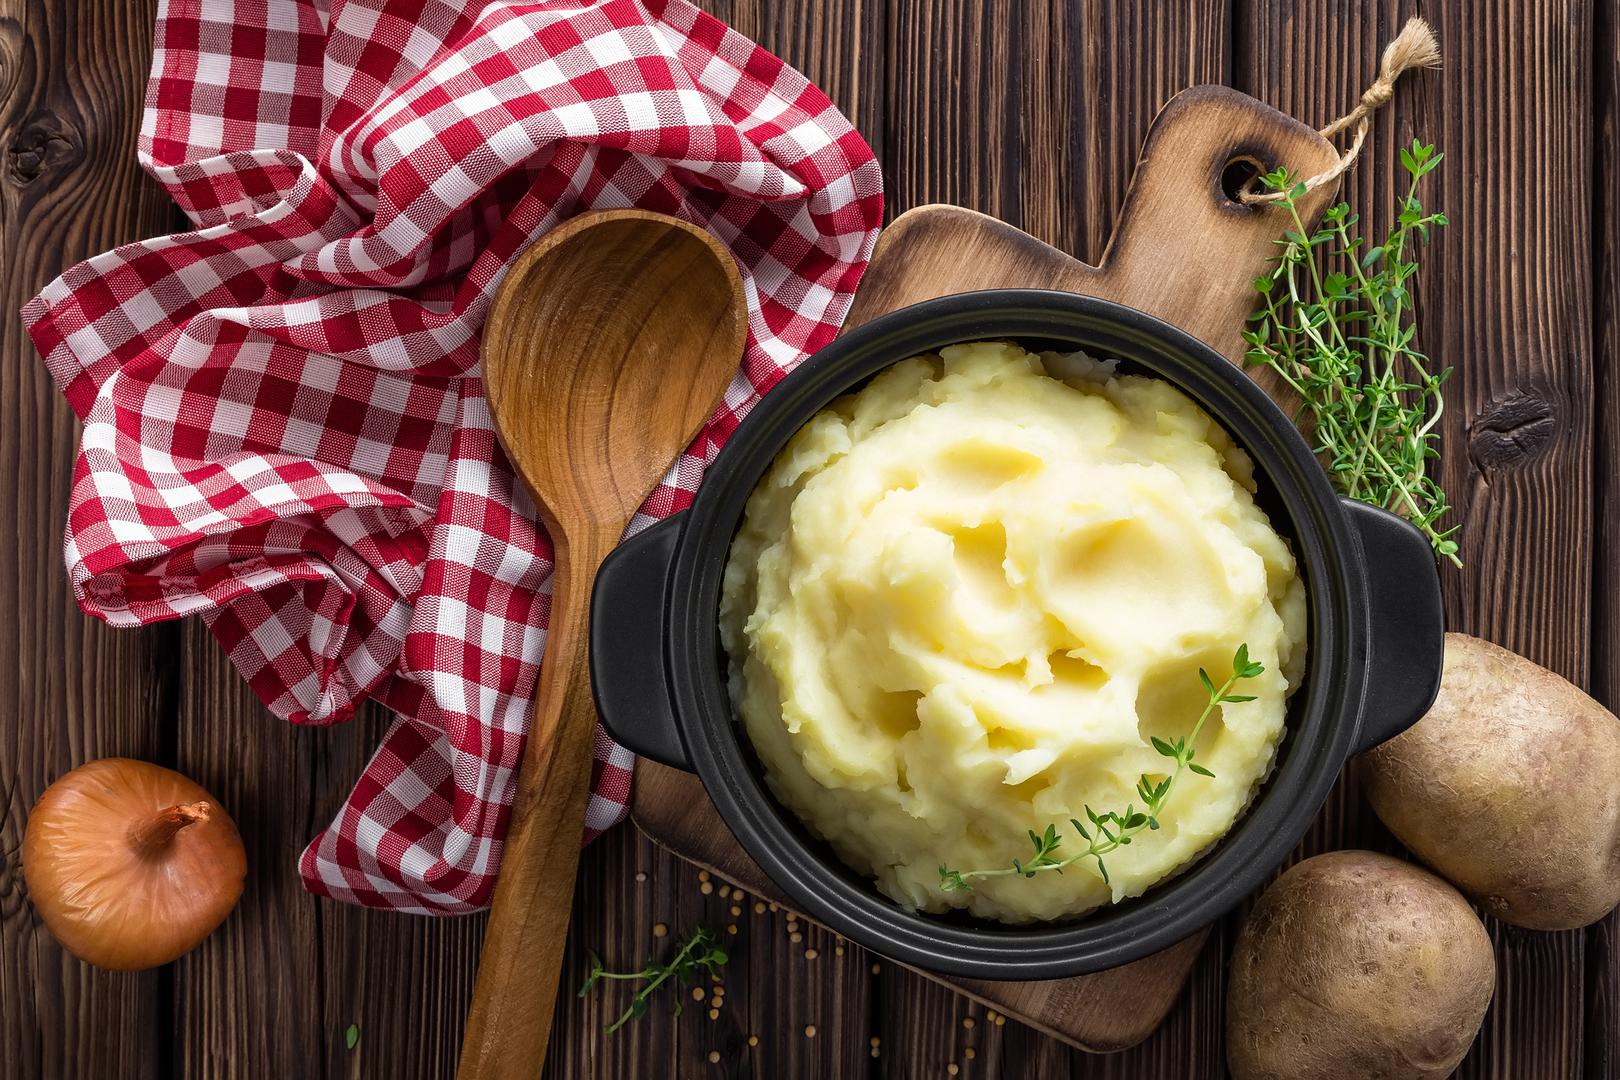 Krumpir zagrijavanjem gubi nutritivna svojstva, a najnovija istraživanja pokazala su kako je krumpir najzdraviji kuhan, ali ohlađen. Tada u krumpiru dolazi do povećanja udjela otpornog škroba koji ima probiotsko djelovanje.